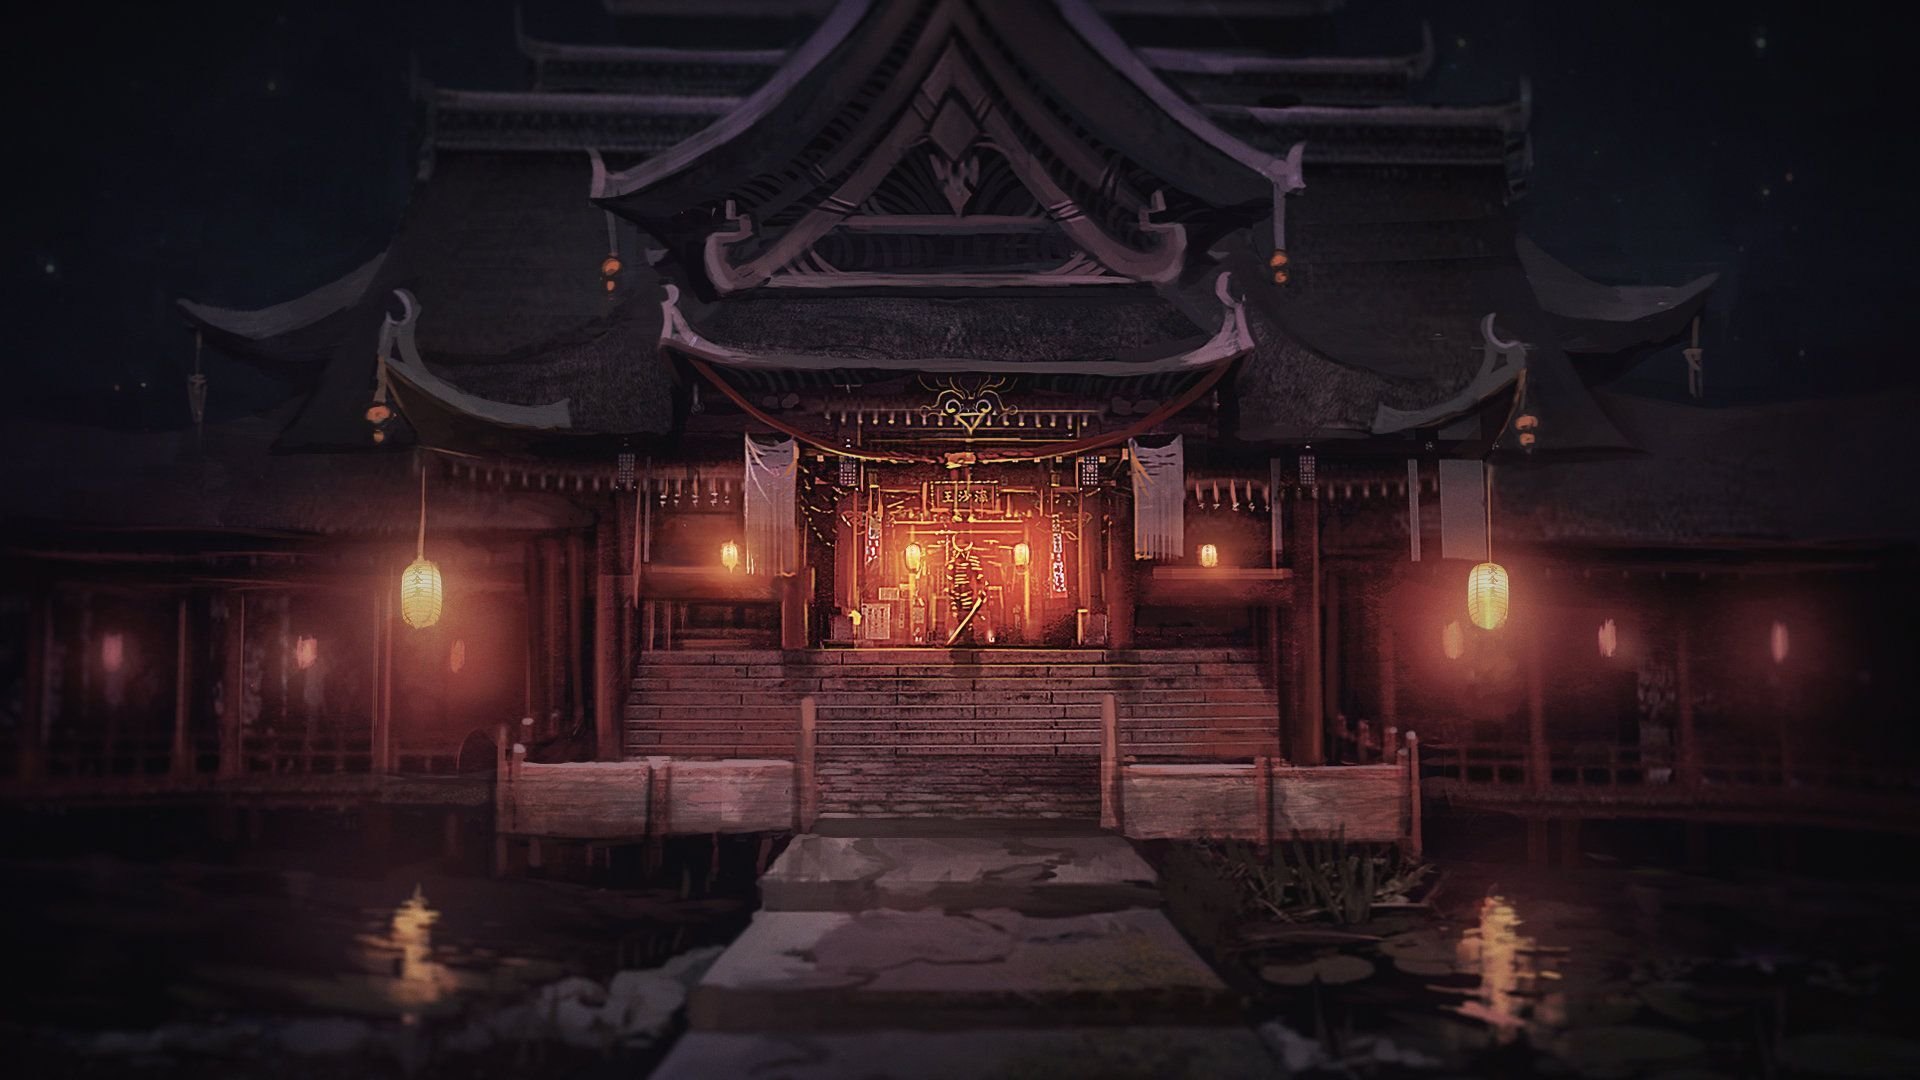 самурайский храм фото